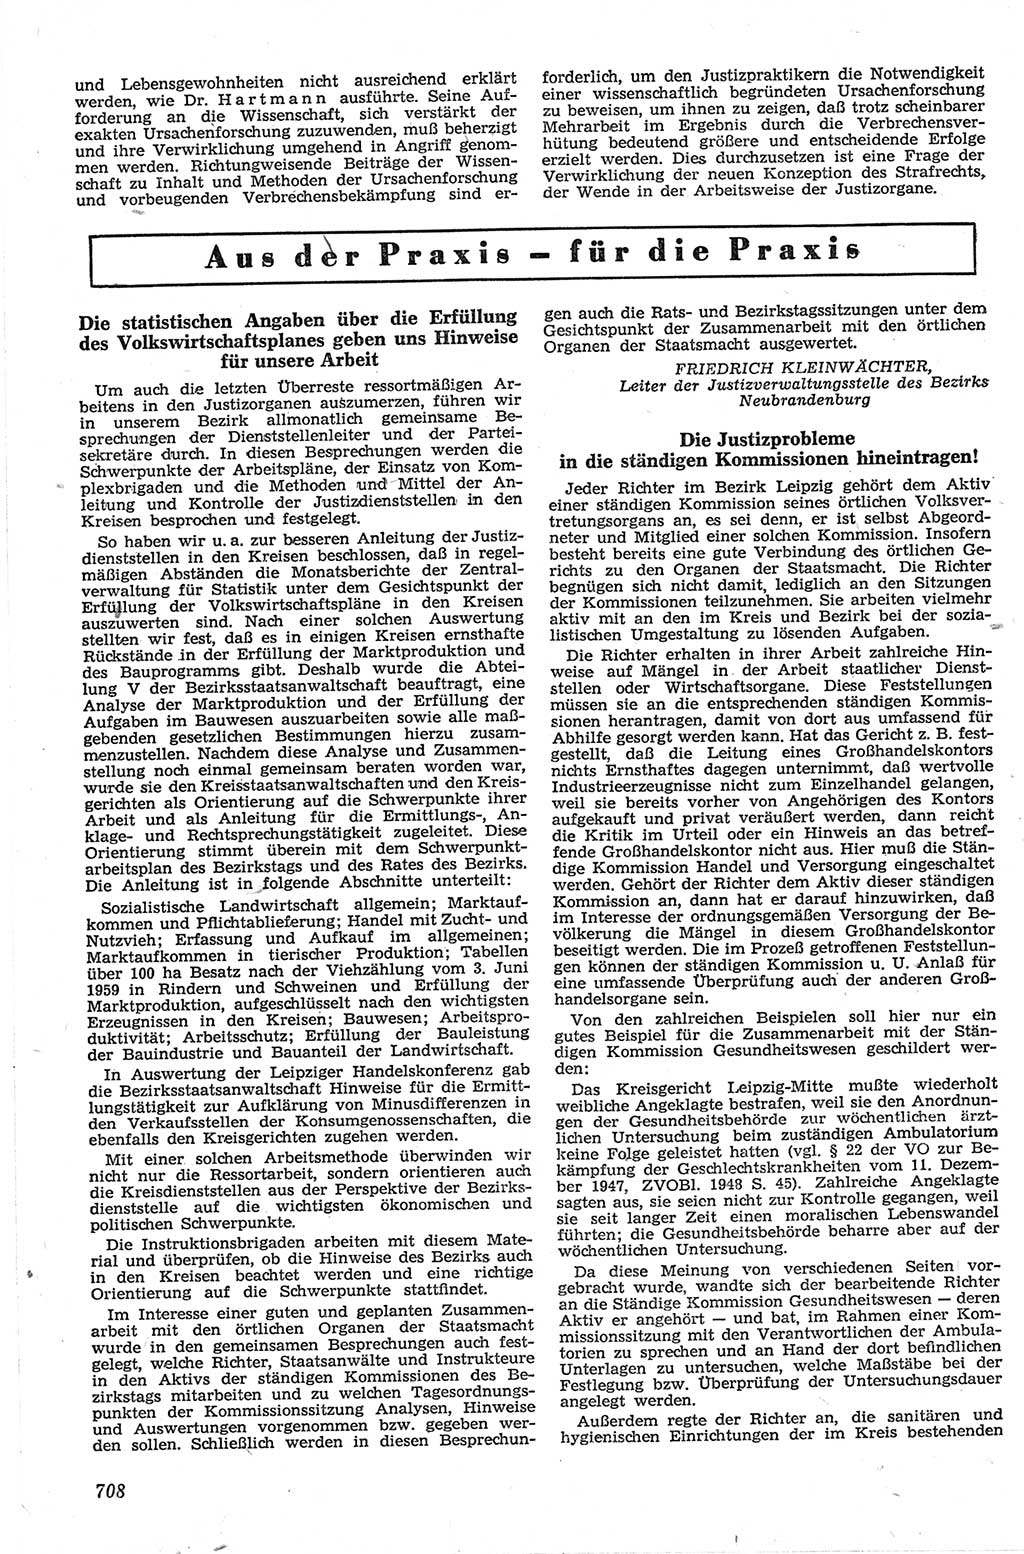 Neue Justiz (NJ), Zeitschrift für Recht und Rechtswissenschaft [Deutsche Demokratische Republik (DDR)], 13. Jahrgang 1959, Seite 708 (NJ DDR 1959, S. 708)